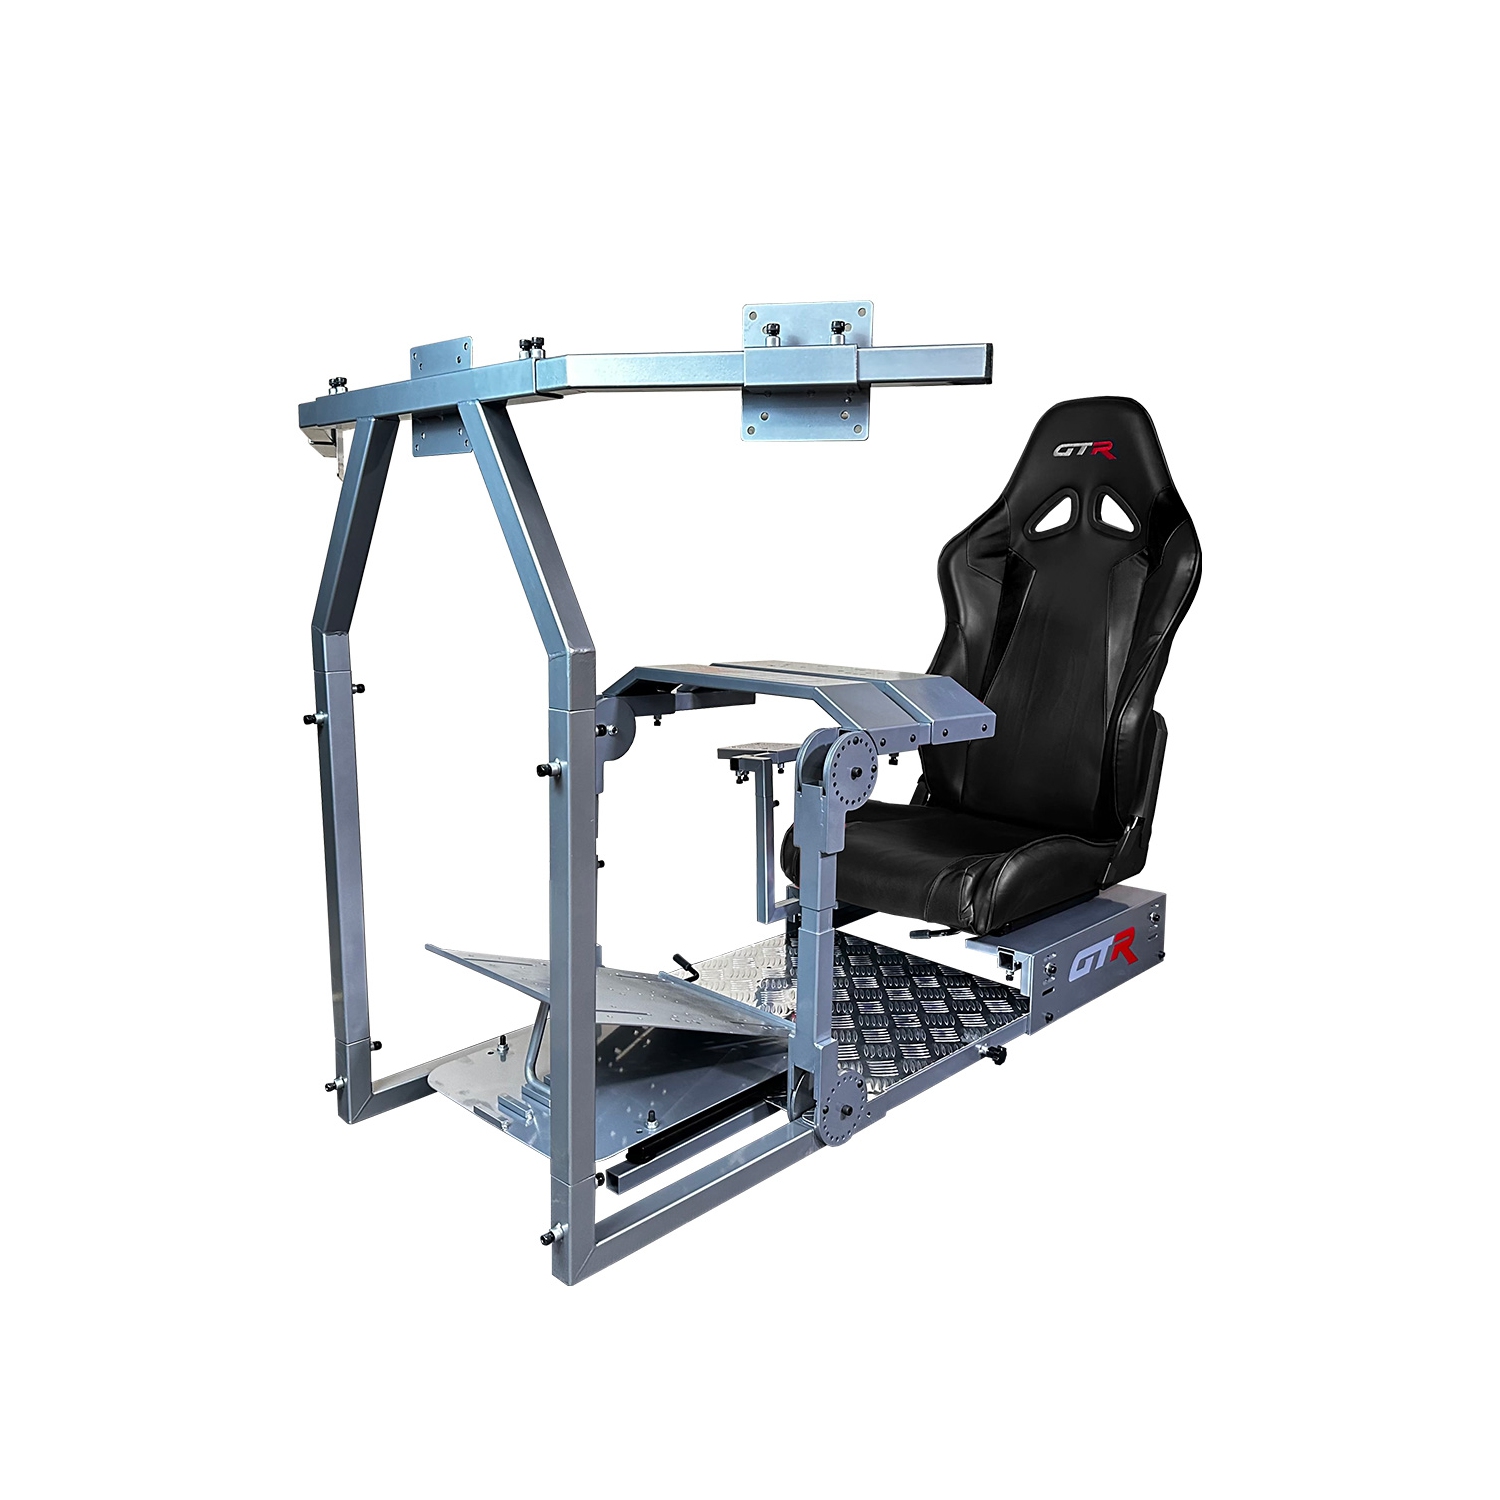 GTR Simulator - Model GTA-Pro Racing Cockpit Real Racing Seat Racing Rig Control Mounts Racing Simulator Gaming